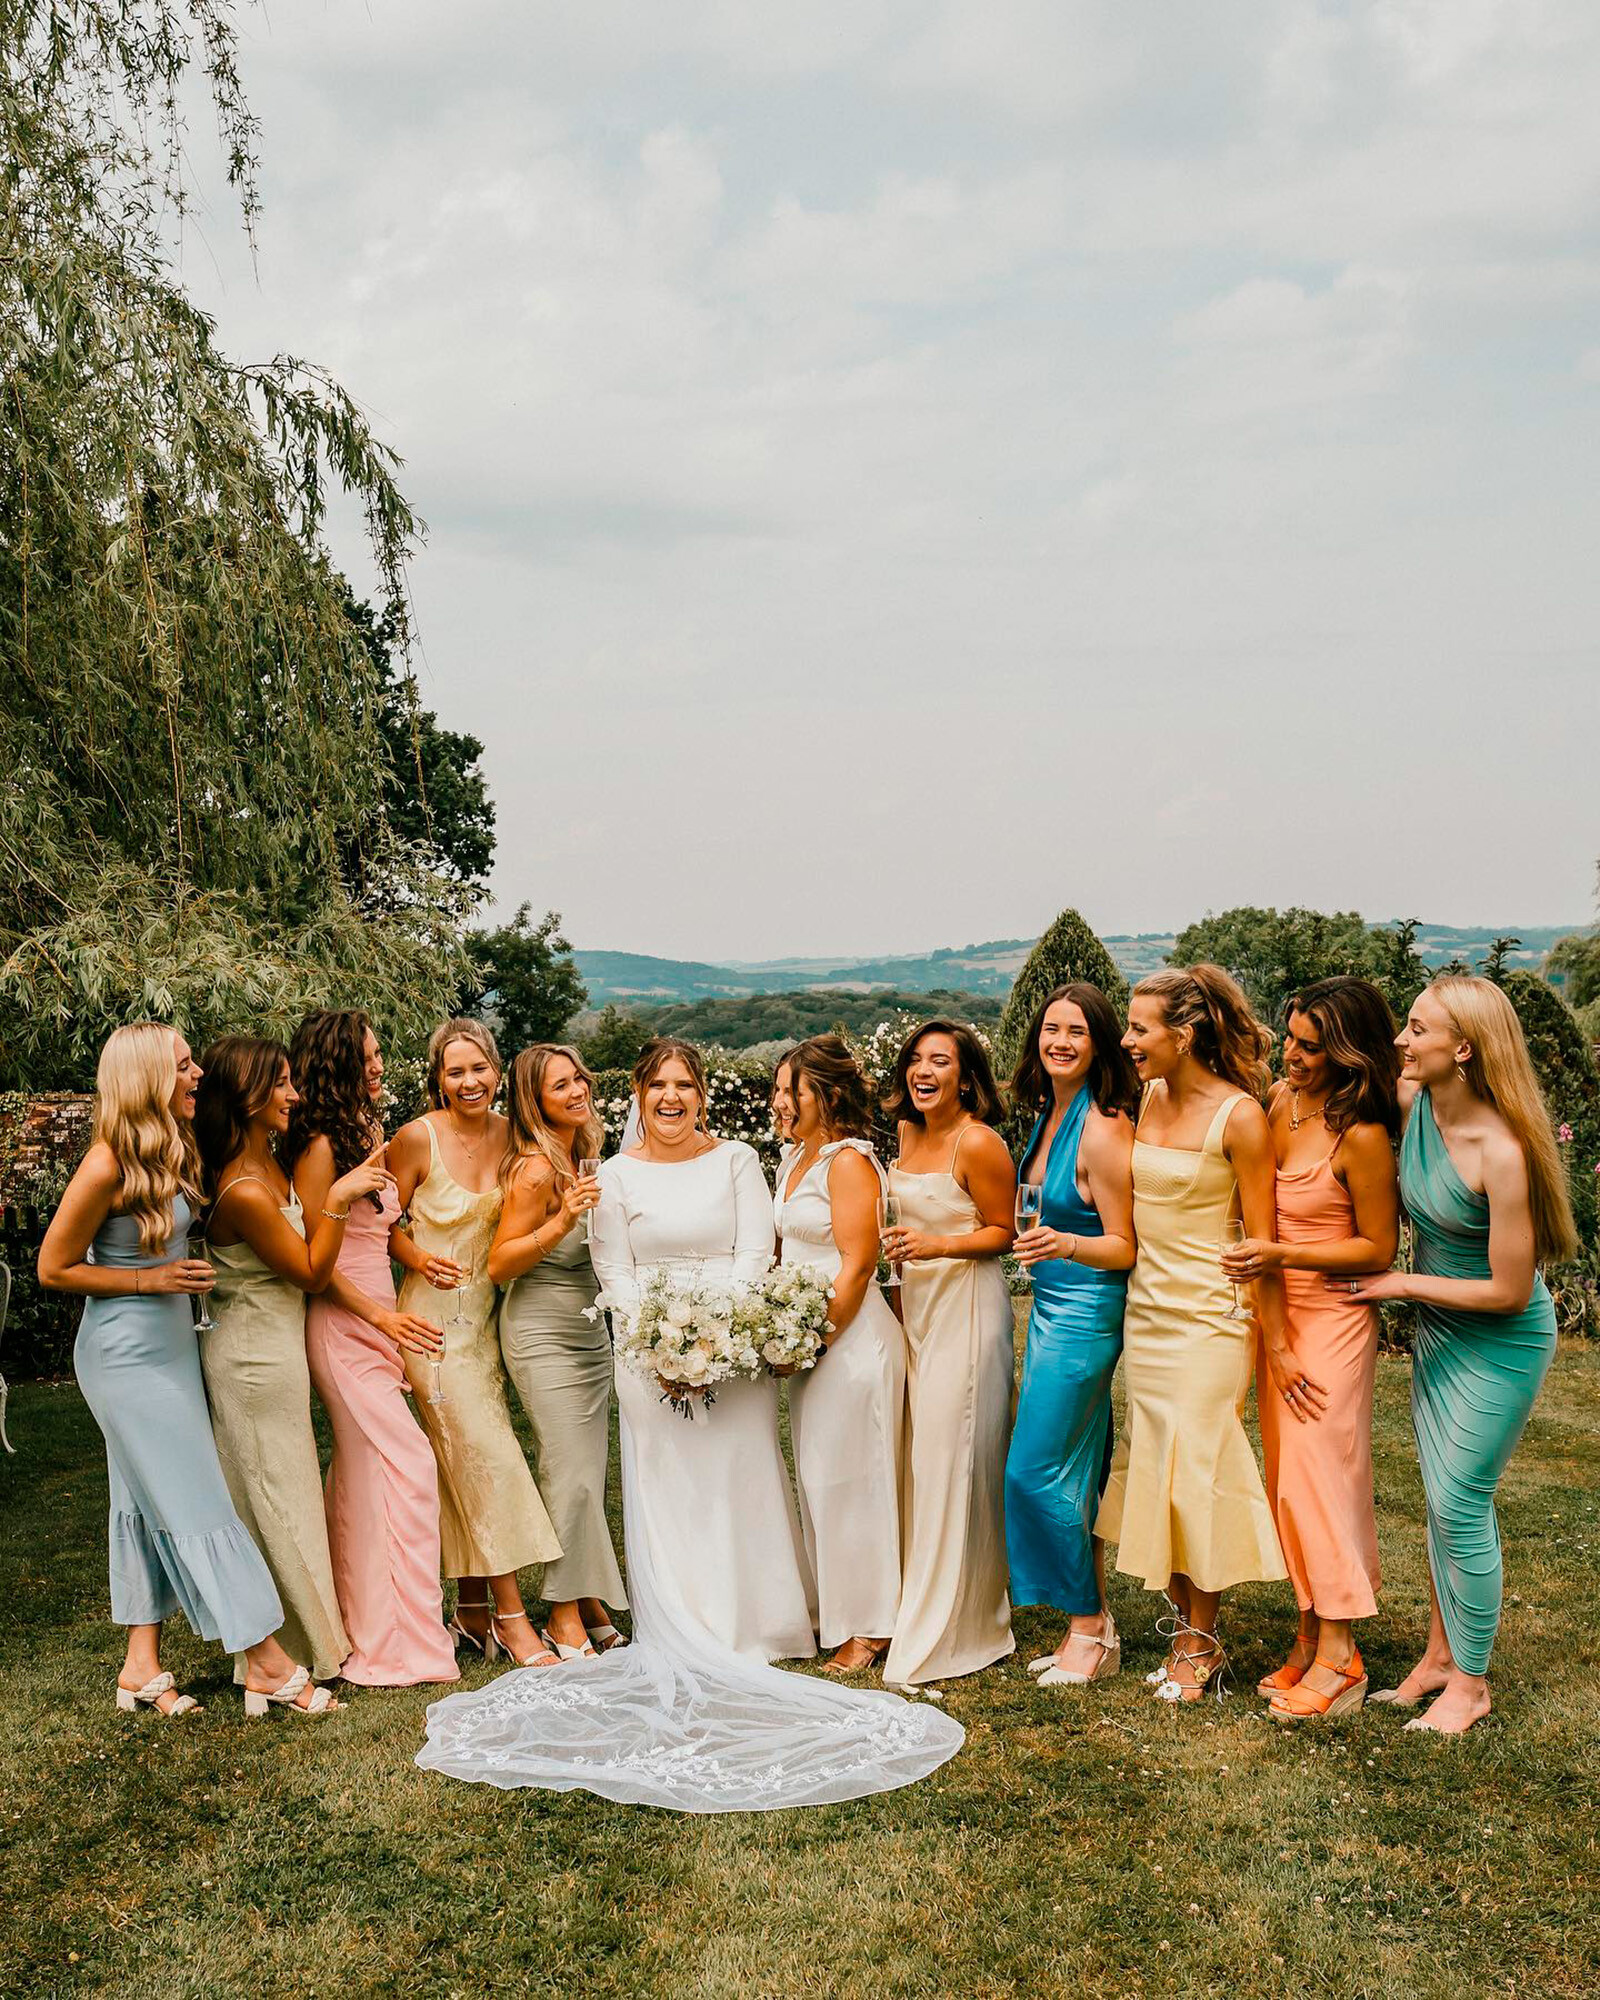 Софи Тёрнер показала идеальный летний наряд для подружки невесты